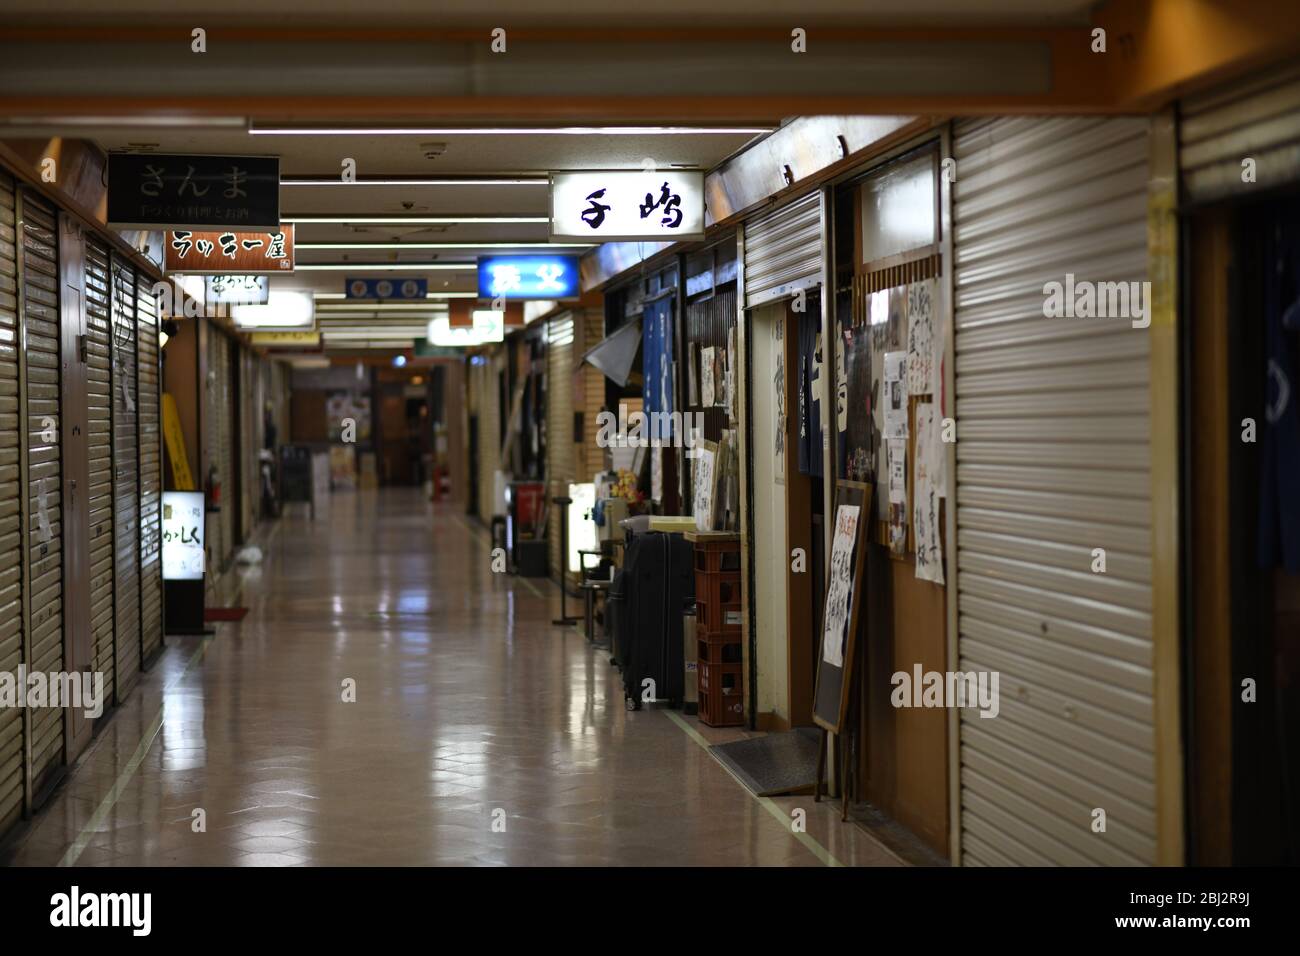 Dienstag. April 2020. TOKIO, JAPAN - APRIL 28: Auf diesem Foto sind Restaurants und Bars zu sehen, die während des COVID-19-Coronavirus-Ausbruchs am Dienstag, den 28. April 2020 in Tokio meist geschlossen sind. Der japanische Premierminister Shinzo Abe hat letzte Woche einen landesweiten Ausnahmezustand ausgerufen, in dem die Menschen aufgefordert werden, zu Hause zu bleiben, um die Ausbreitung des Coronavirus im ganzen Land zu verhindern. (Foto: Richard Atrero de Guzman/AFLO) Quelle: Aflo Co. Ltd./Alamy Live News Stockfoto